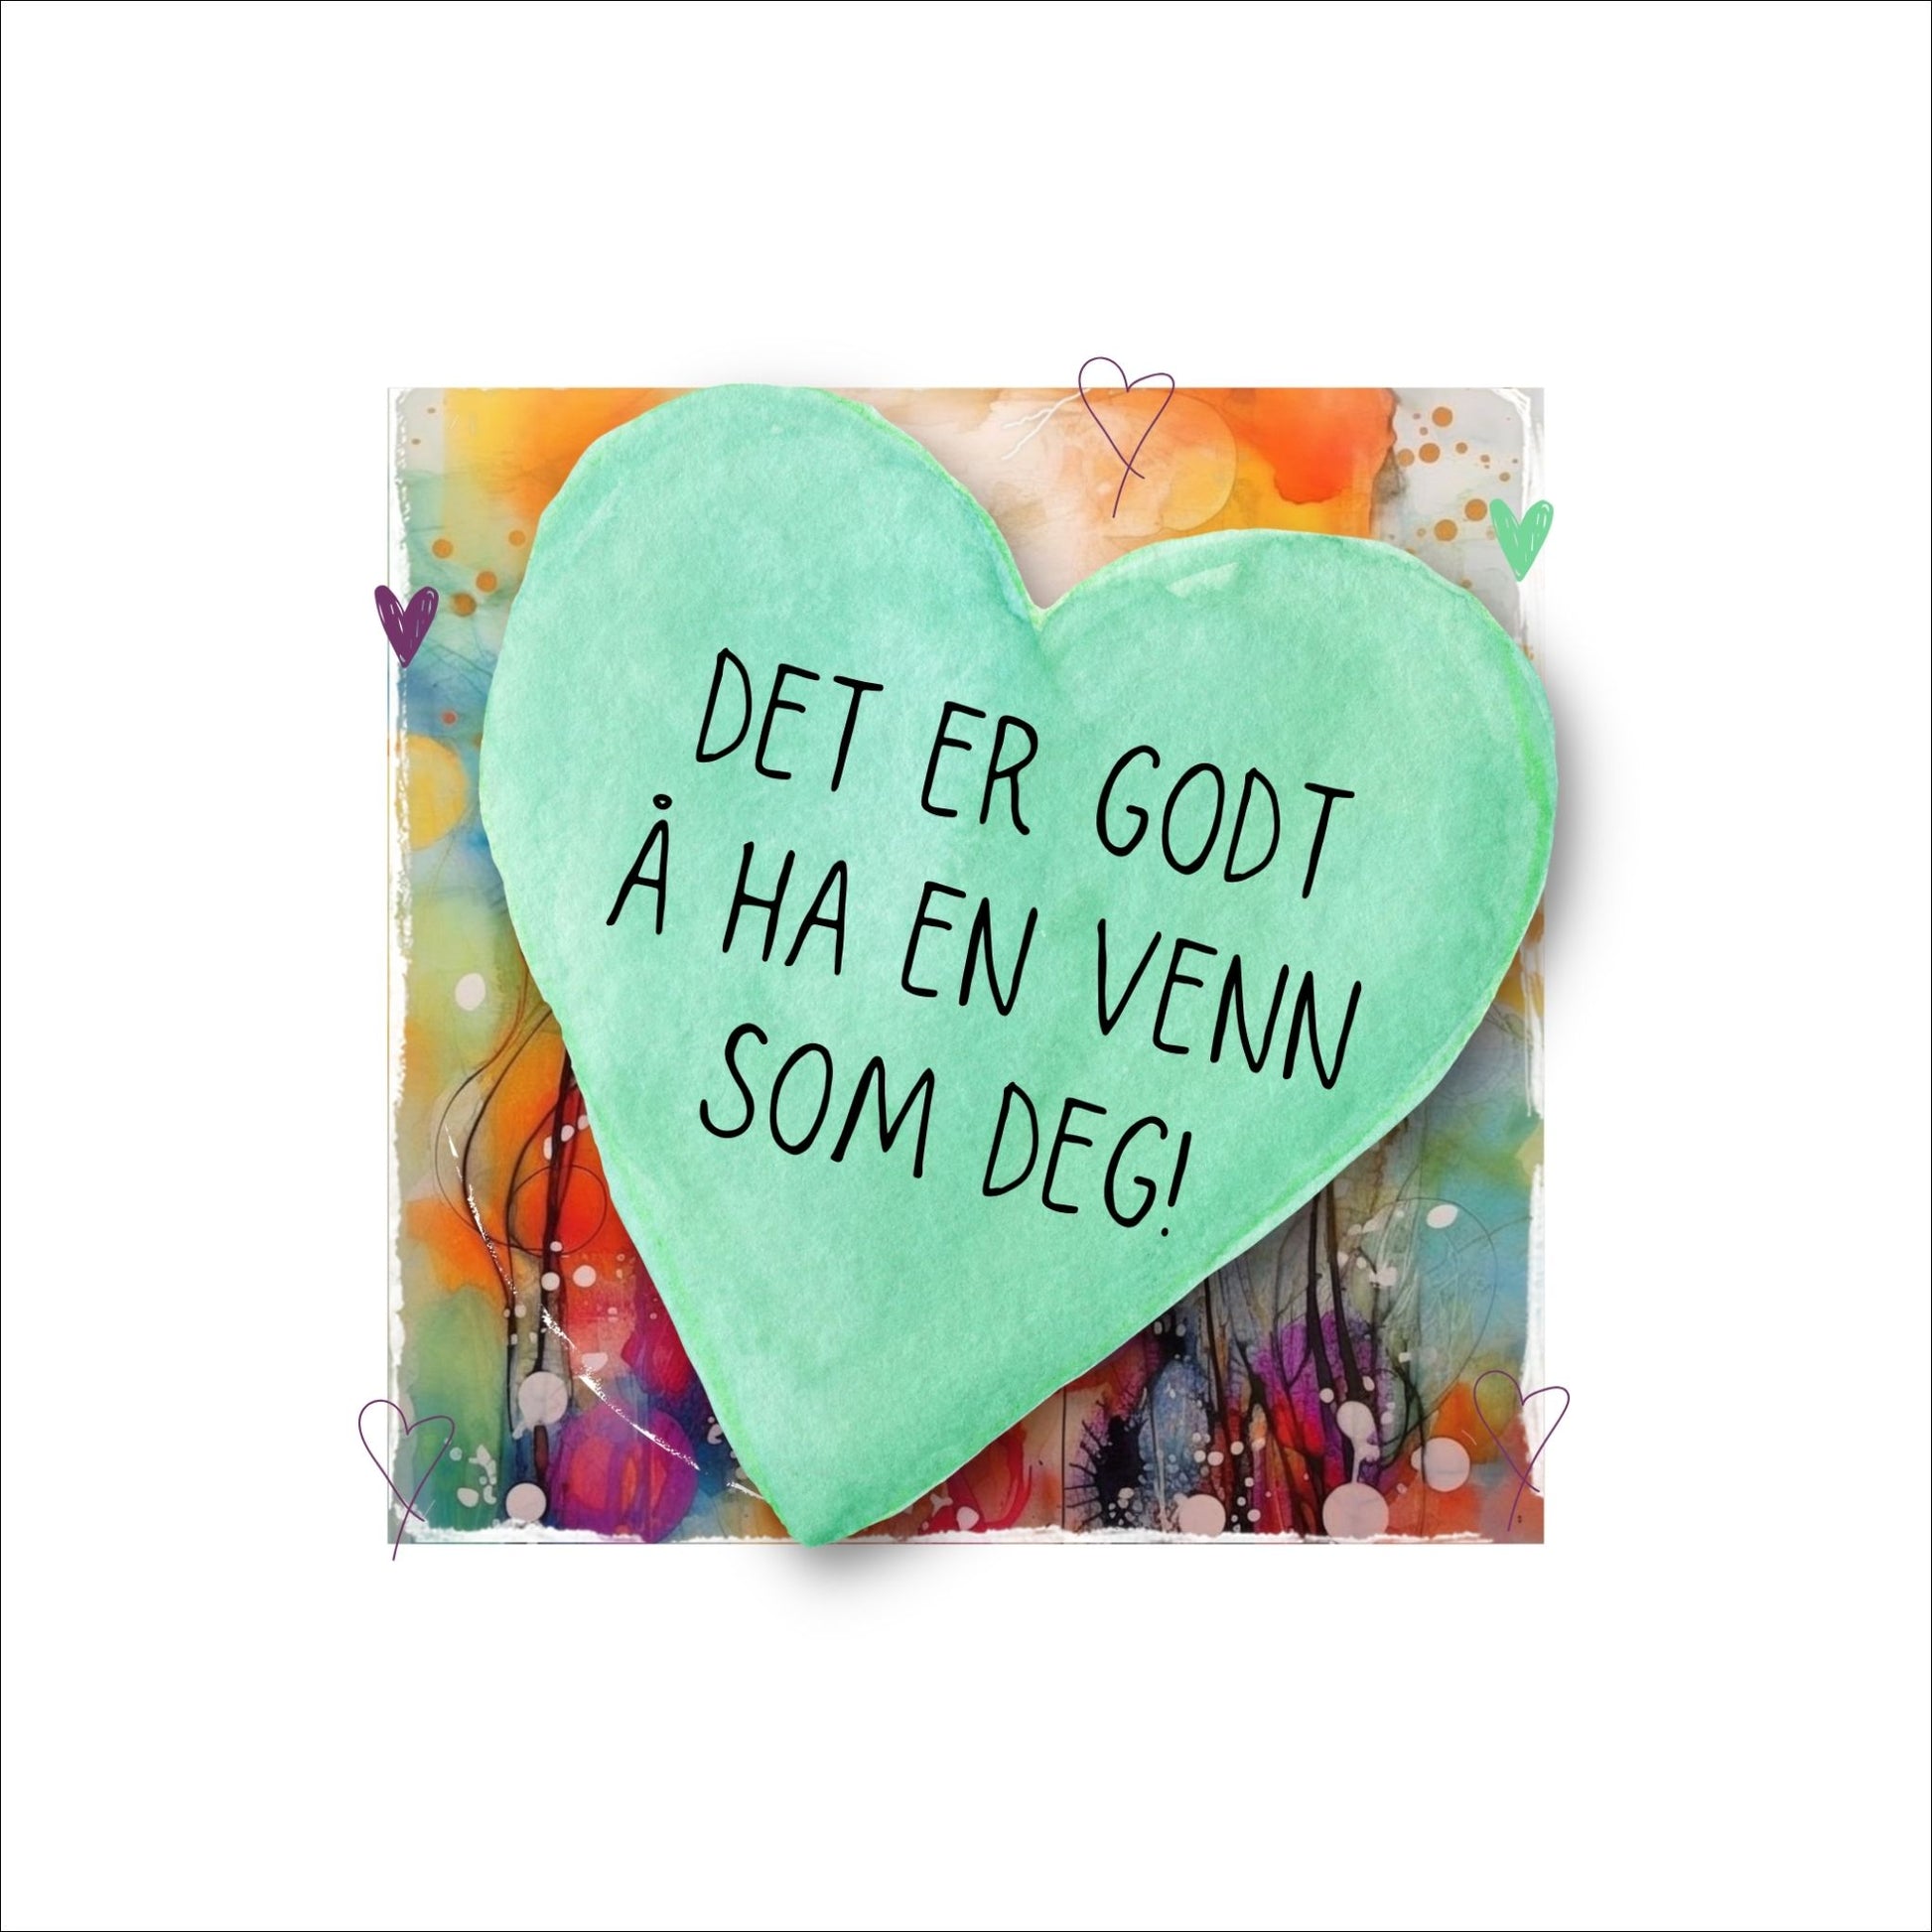 Plakat med lysegrønt hjerte og tekst "Det er godt å ha en venn som deg" - og et motiv med farger i grønn, blått og oransje. Med hvit kant på 4 cm. 